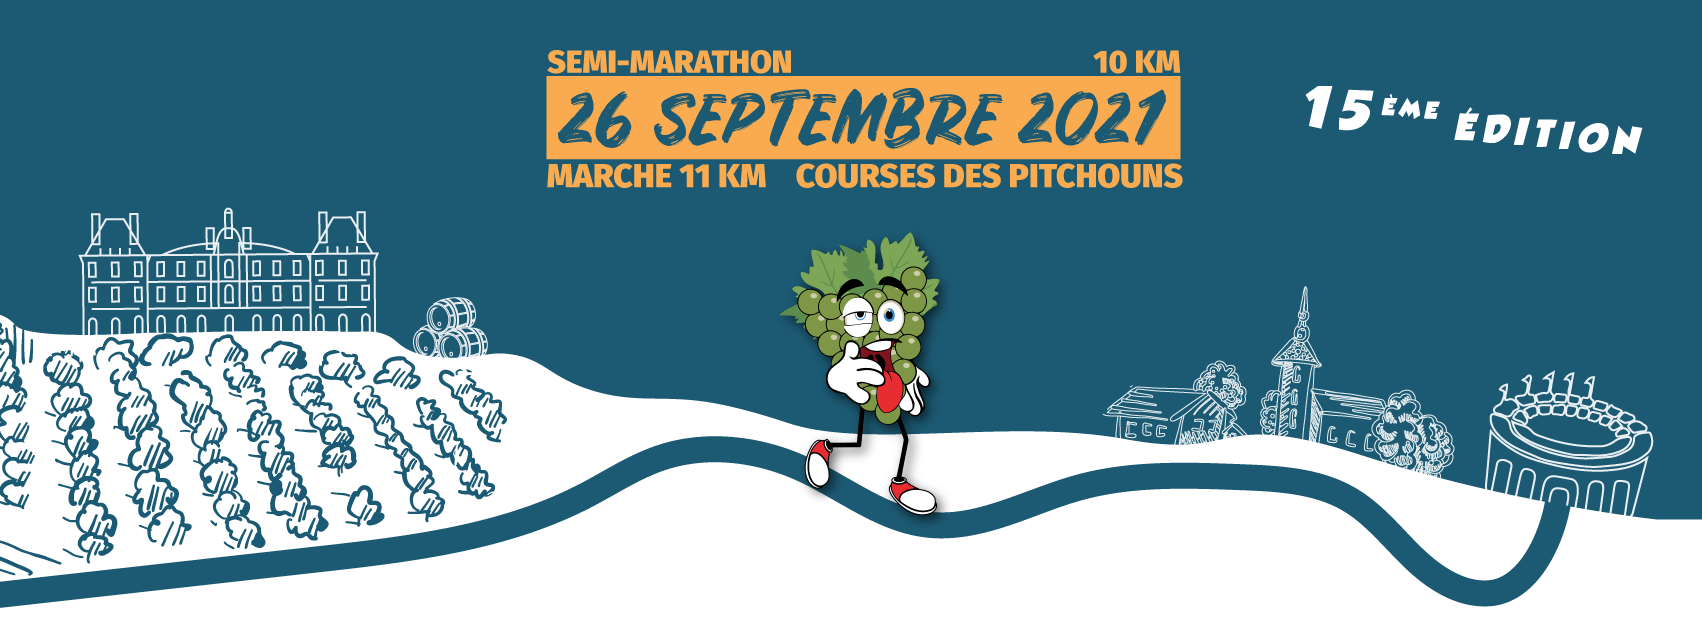 Semi-marathon de l'Armagnac 2021